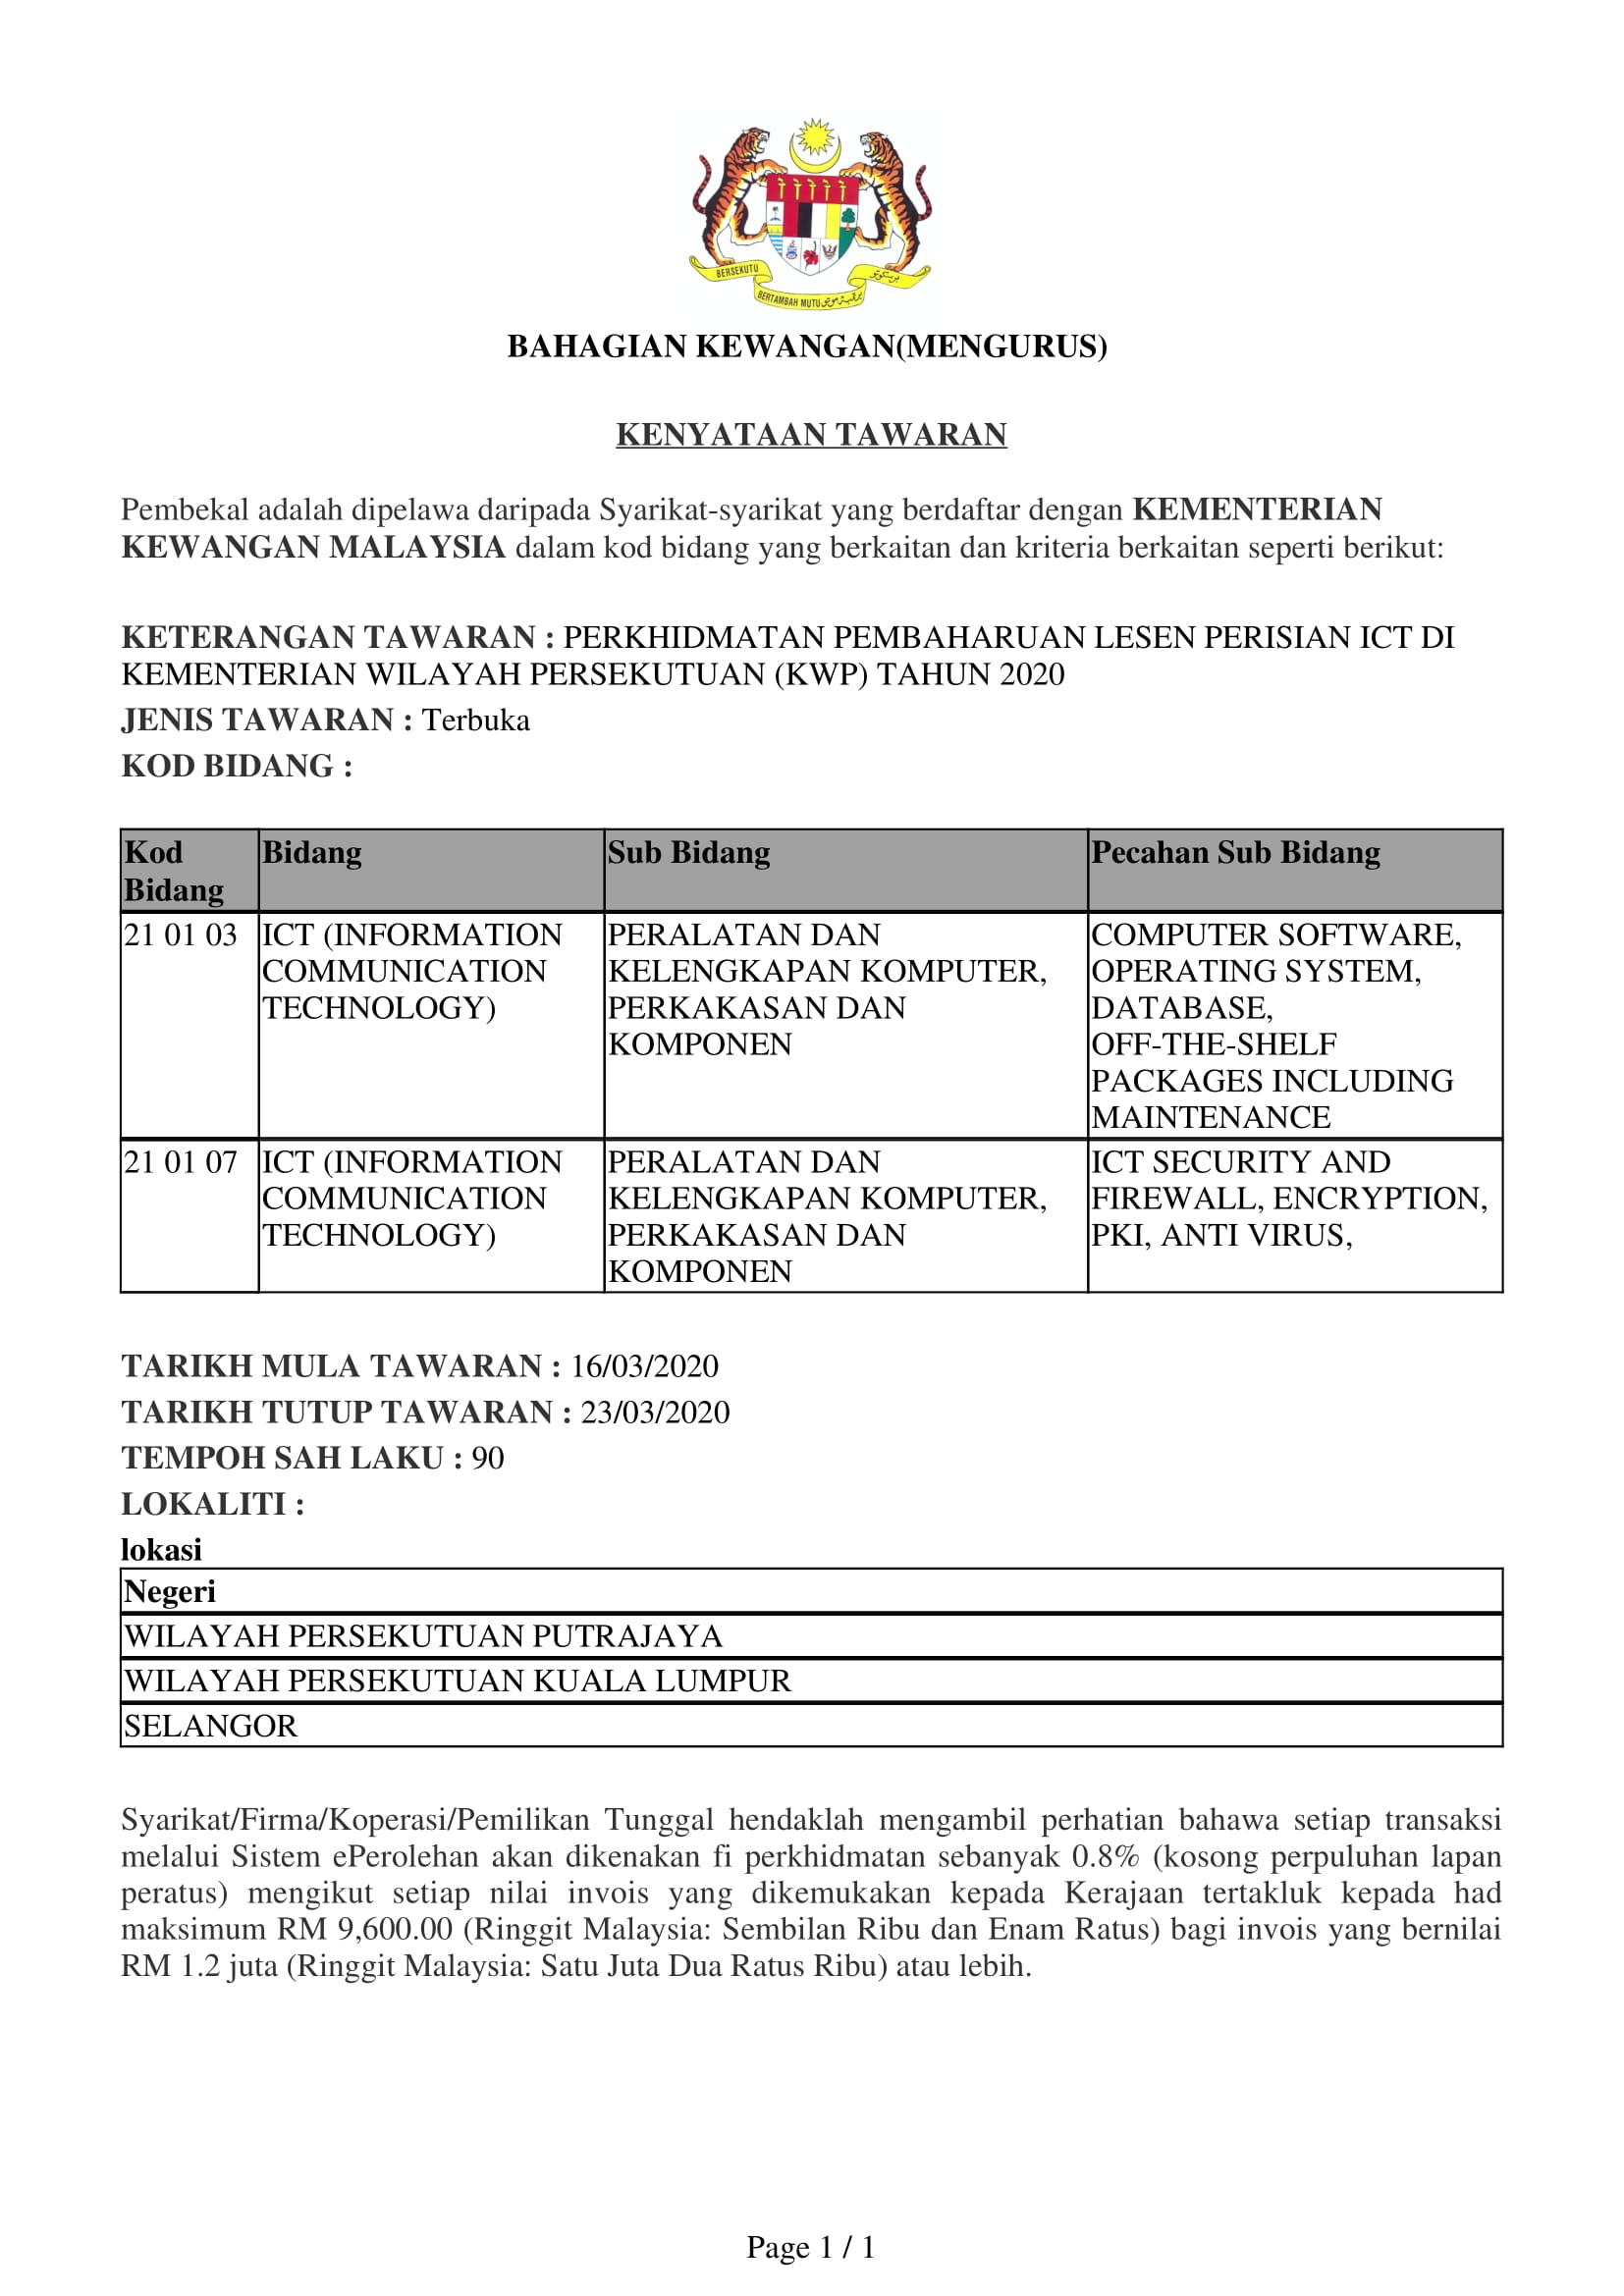 16032020 Subut harga Perkhidmatan Pembaharuan Lesen Perisian ICT di KWP 1